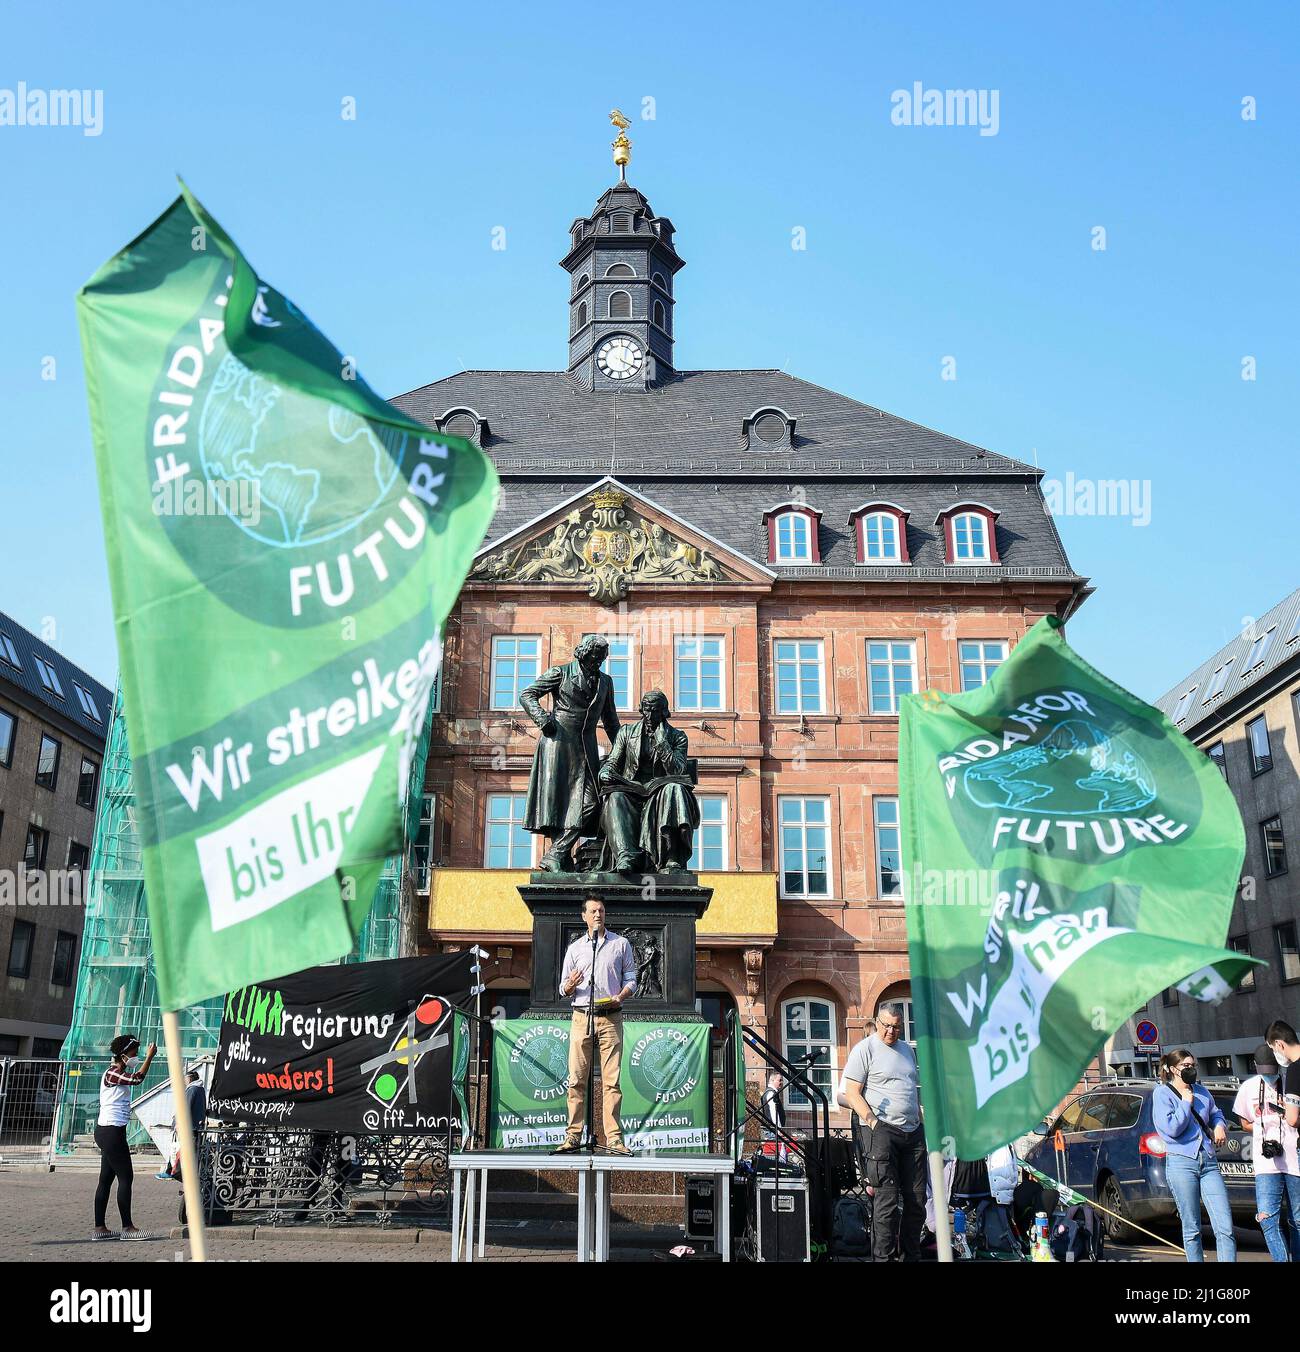 Hanau, Deutschland. 25. März 2022. 25.. März 2022, xpsx, lokale Hanau  Aufruf zu einem Klimastreik Freitag für die Zukunft von links nach rechts  Demo, Demonstration, Streik, Klima, Fahrrad, Auto, Umwelt, Regierung Kredit: